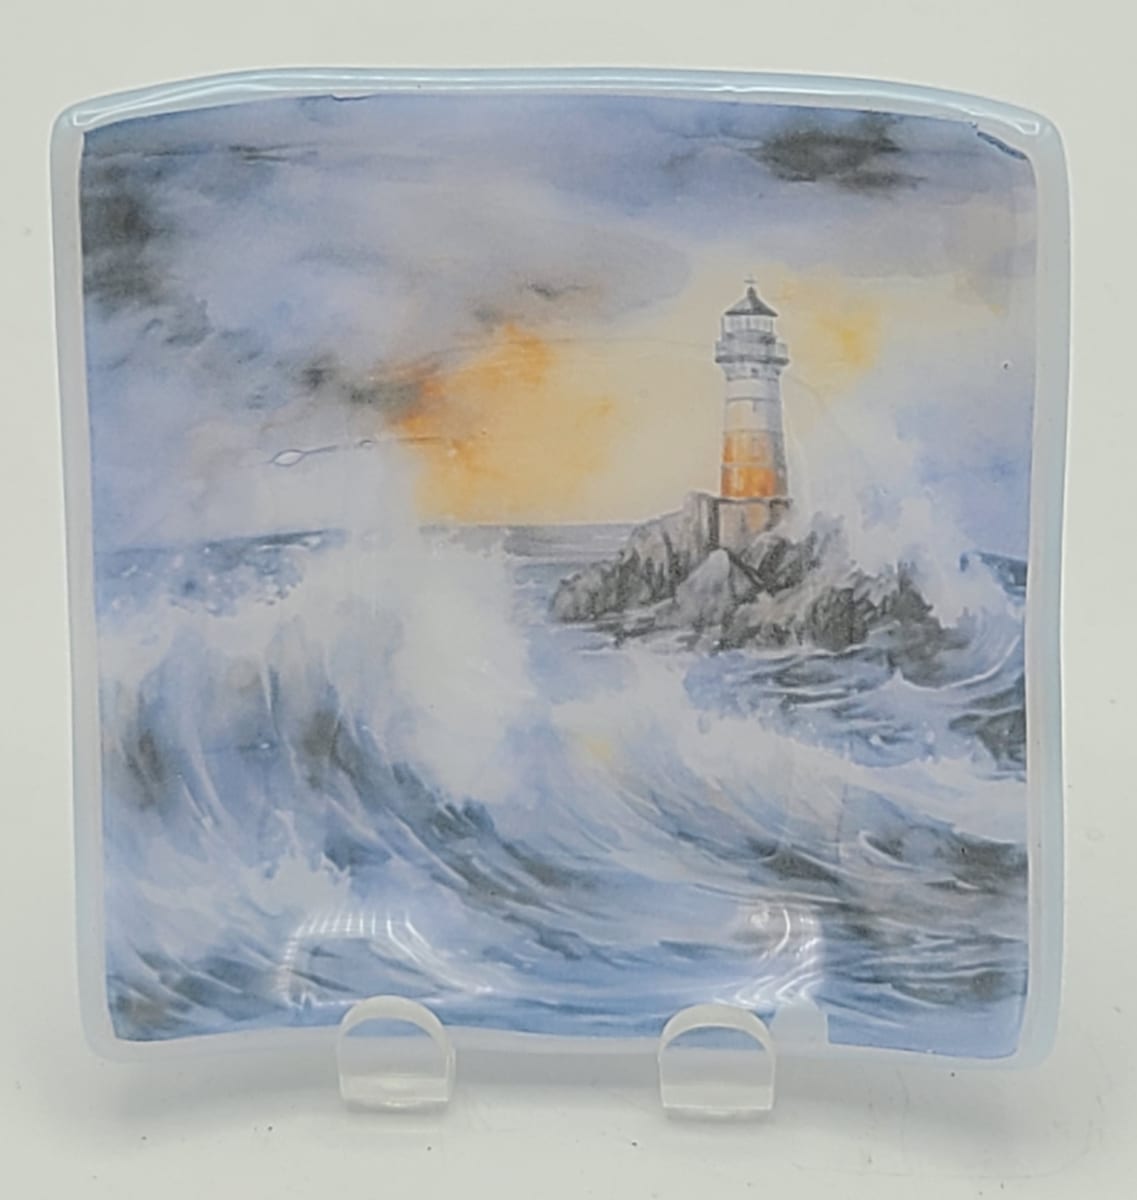 Trinket Plate-Lighthouse in Swirling Seas by Kathy Kollenburn 